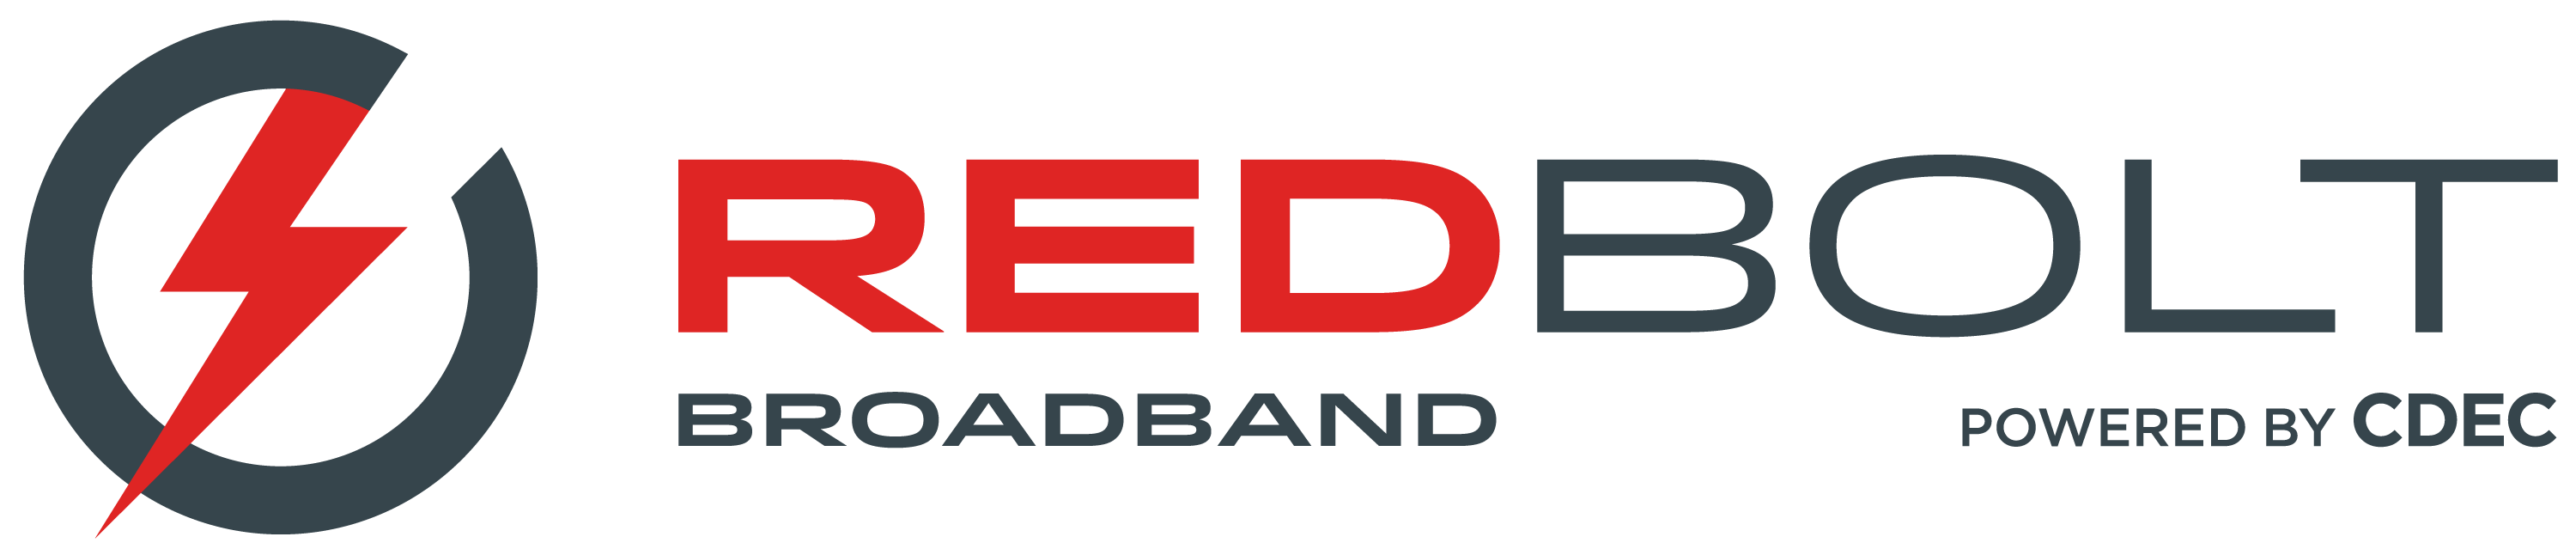 Red Bolt Broadband logo